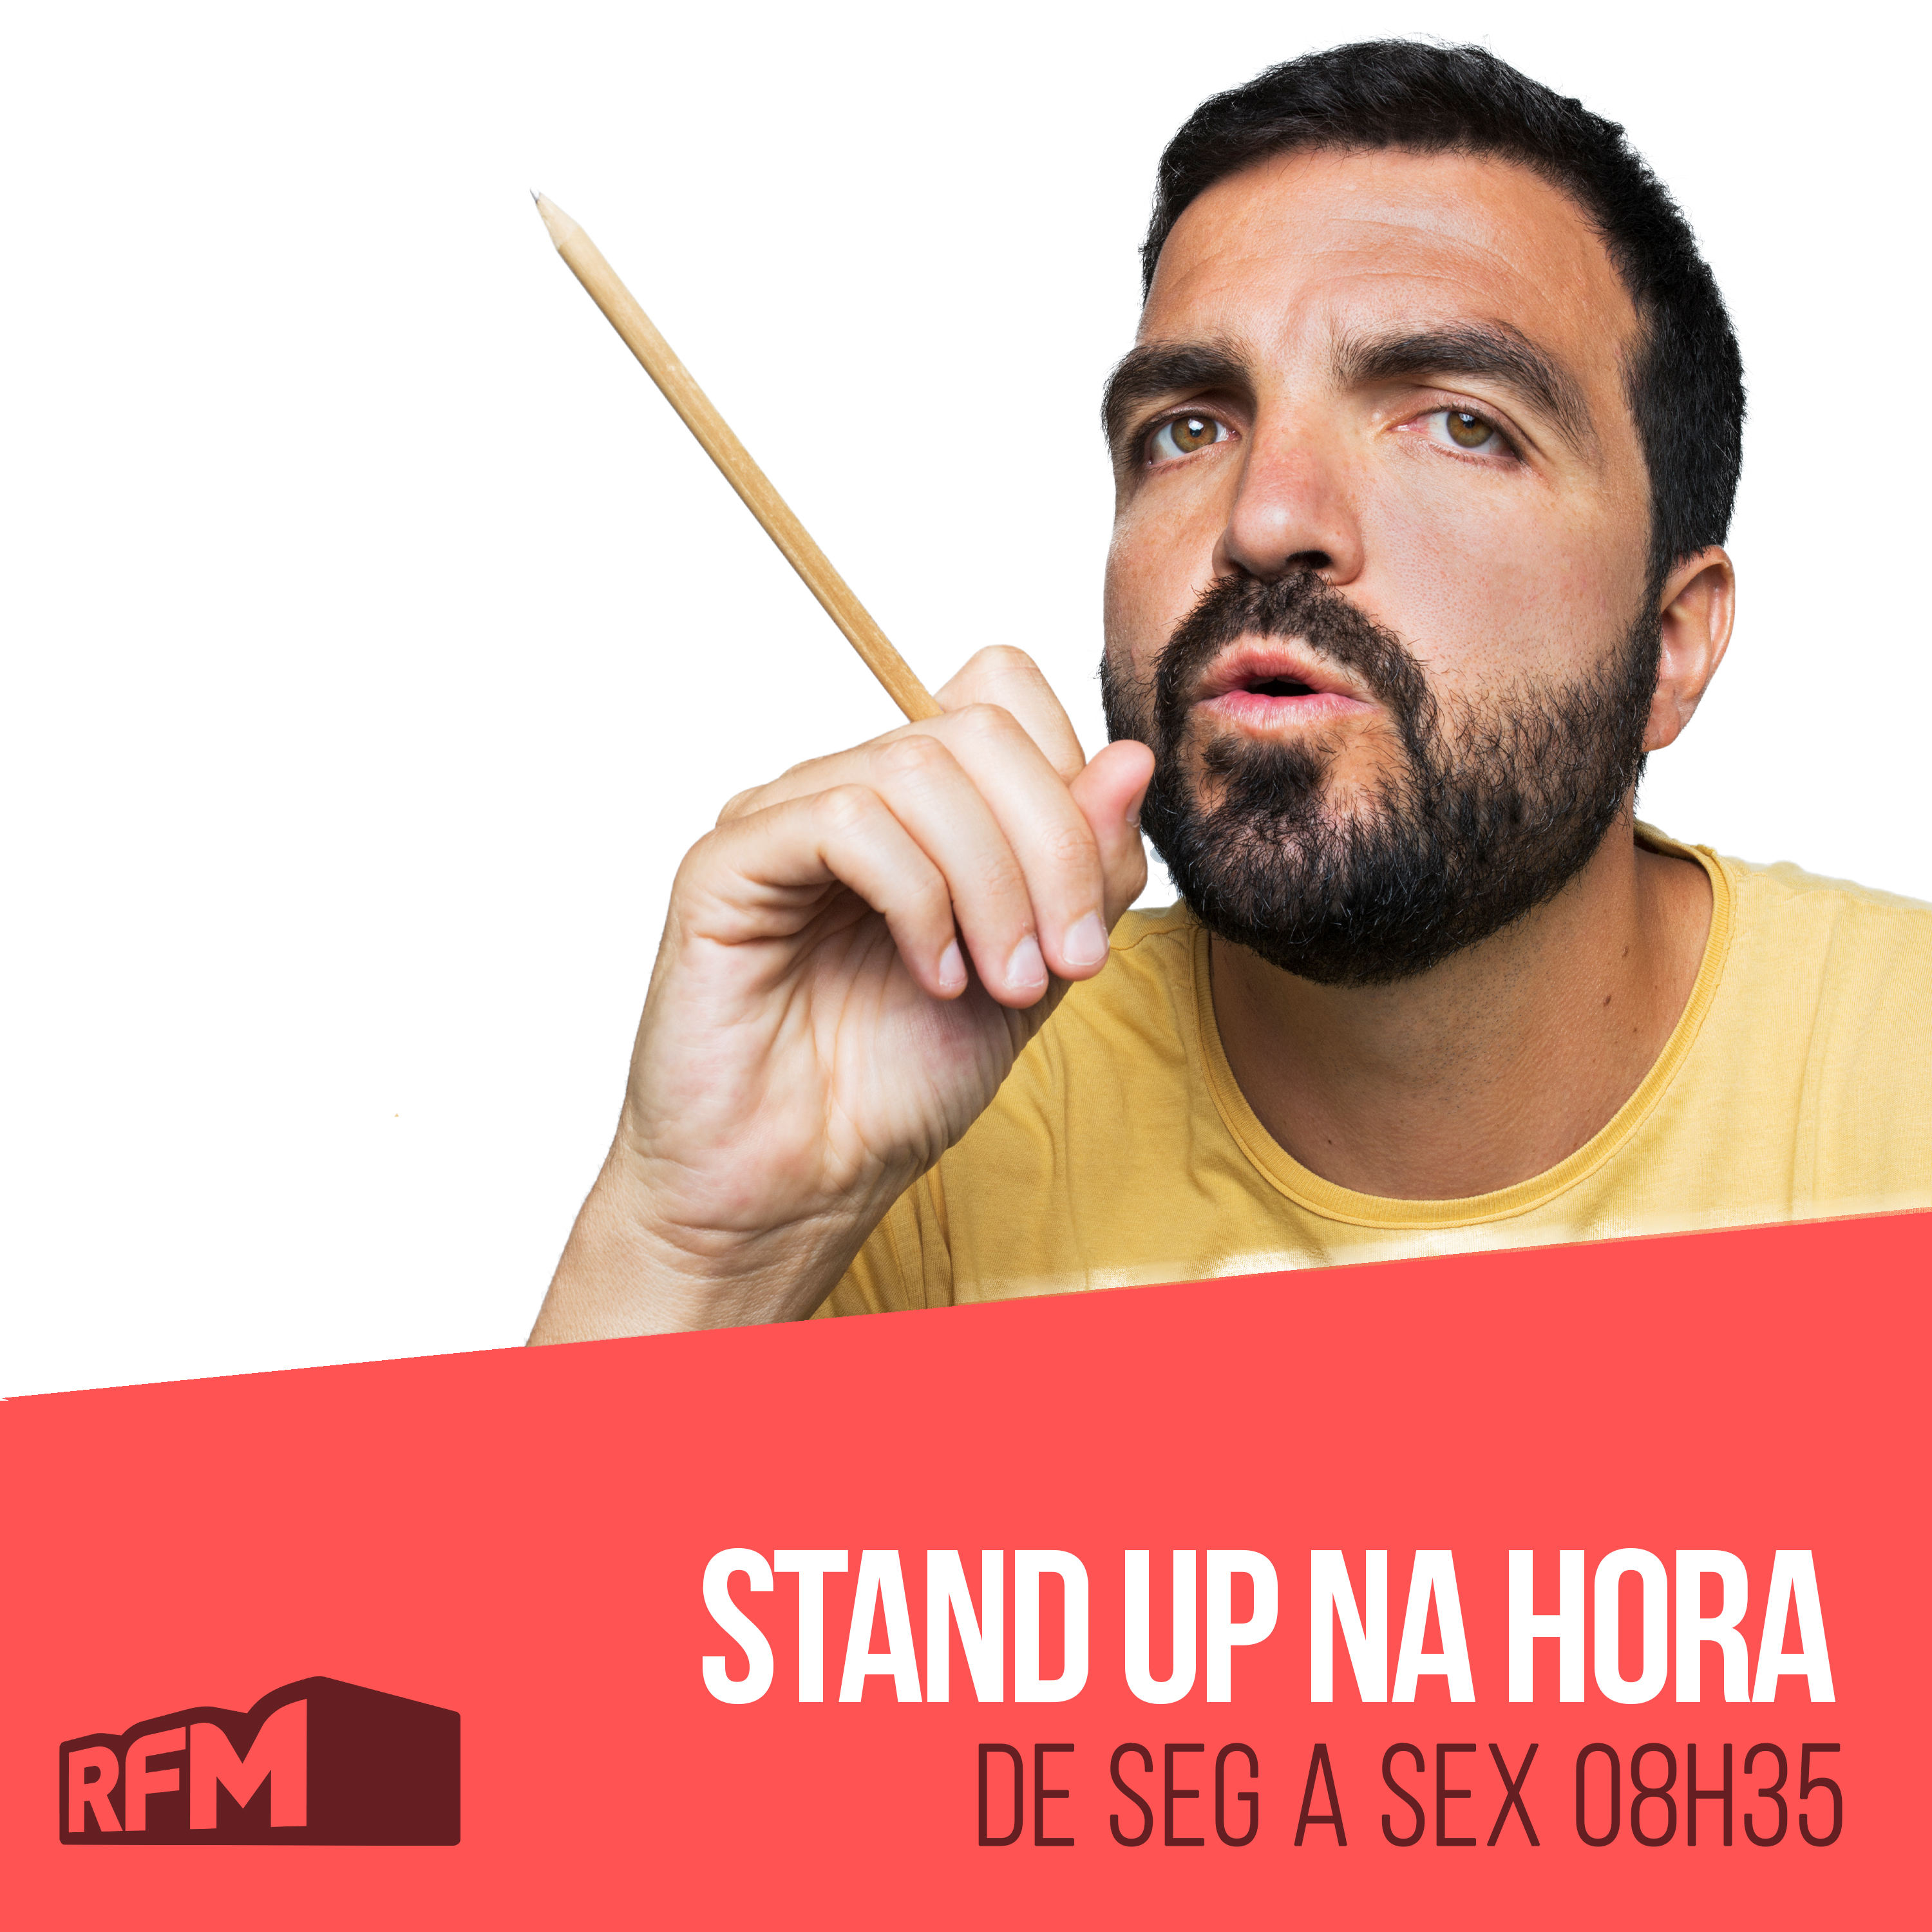 RFM - STAND UP NA HORA: FALTA DE BIQUÍNI DÁ MULTA